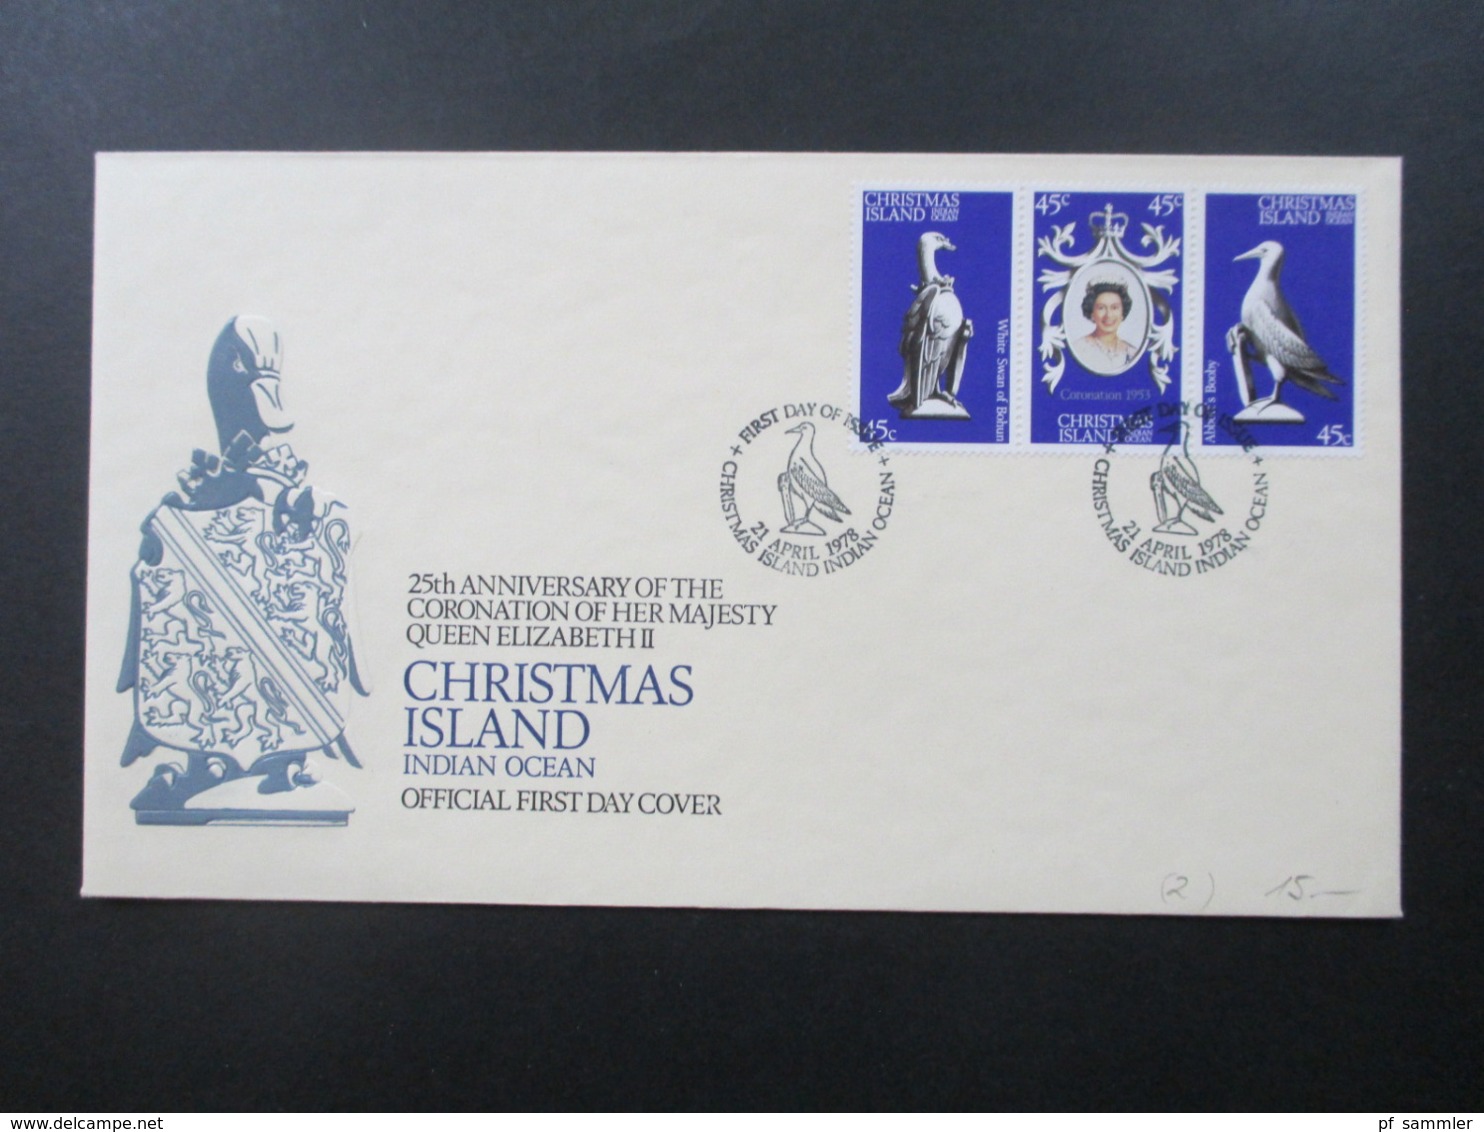 Chrismas Island 1978 FDC Coronation of her Majesty Queen Elizabeth II 2 Belege 1x mit Block und Sonderstempel